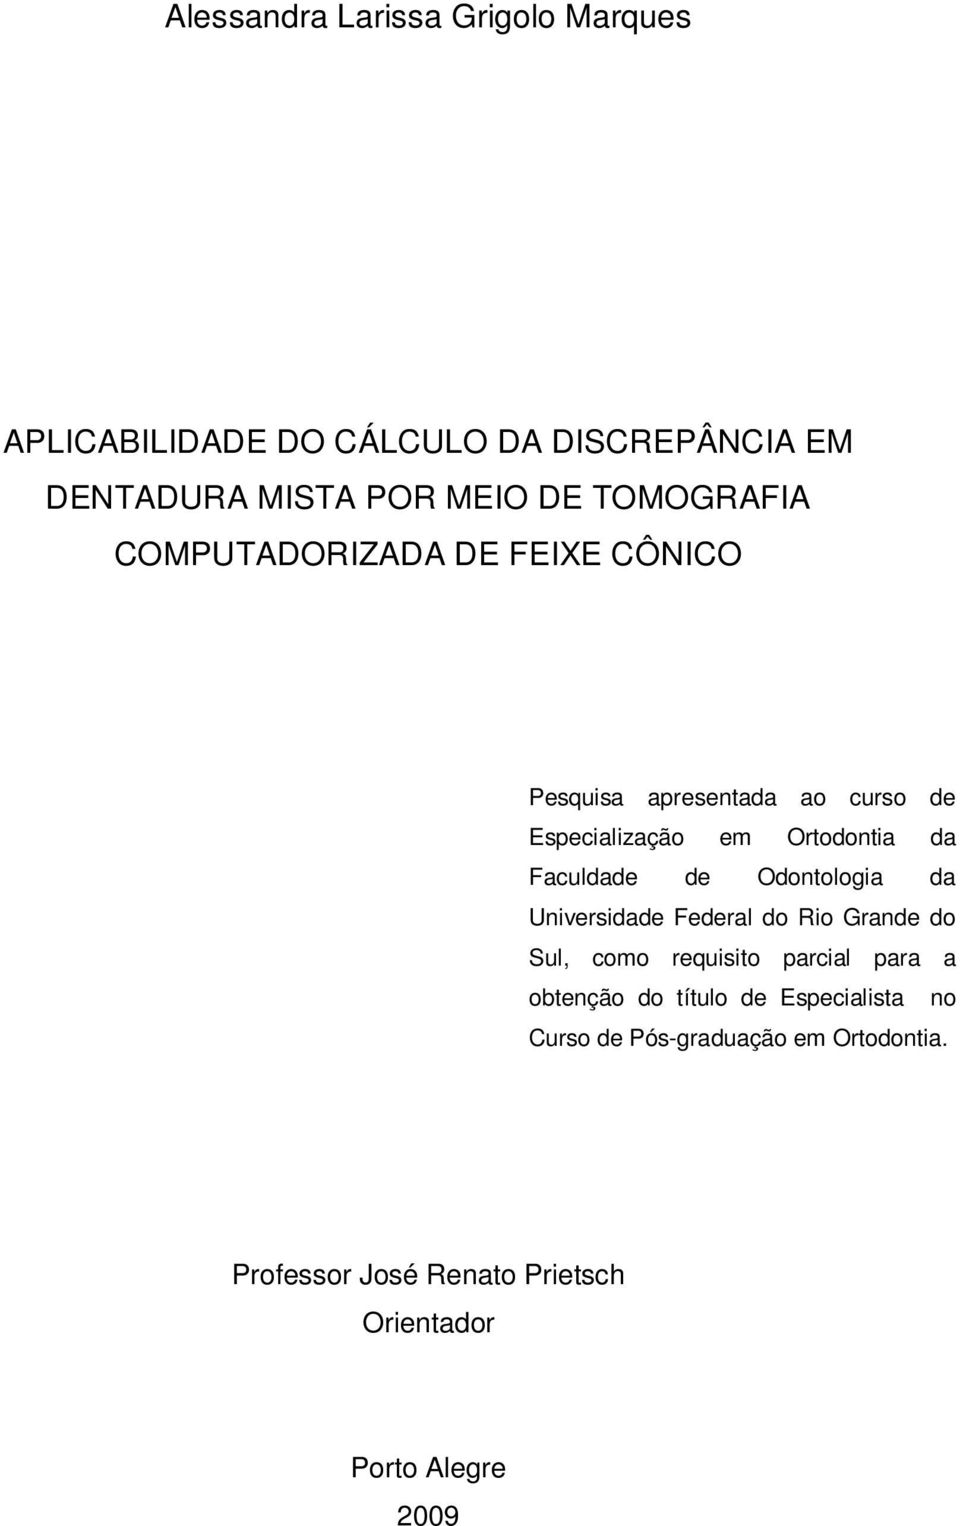 Faculdade de Odontologia da Universidade Federal do Rio Grande do Sul, como requisito parcial para a obtenção do